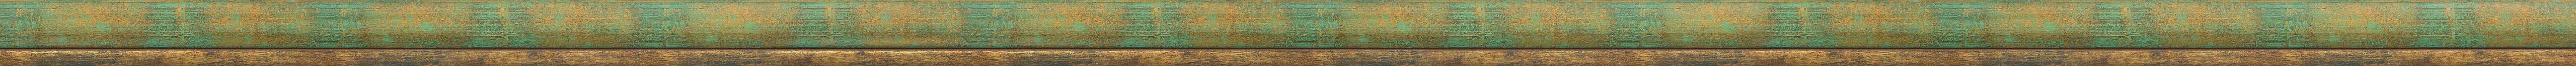 Curved green-gold frame frame